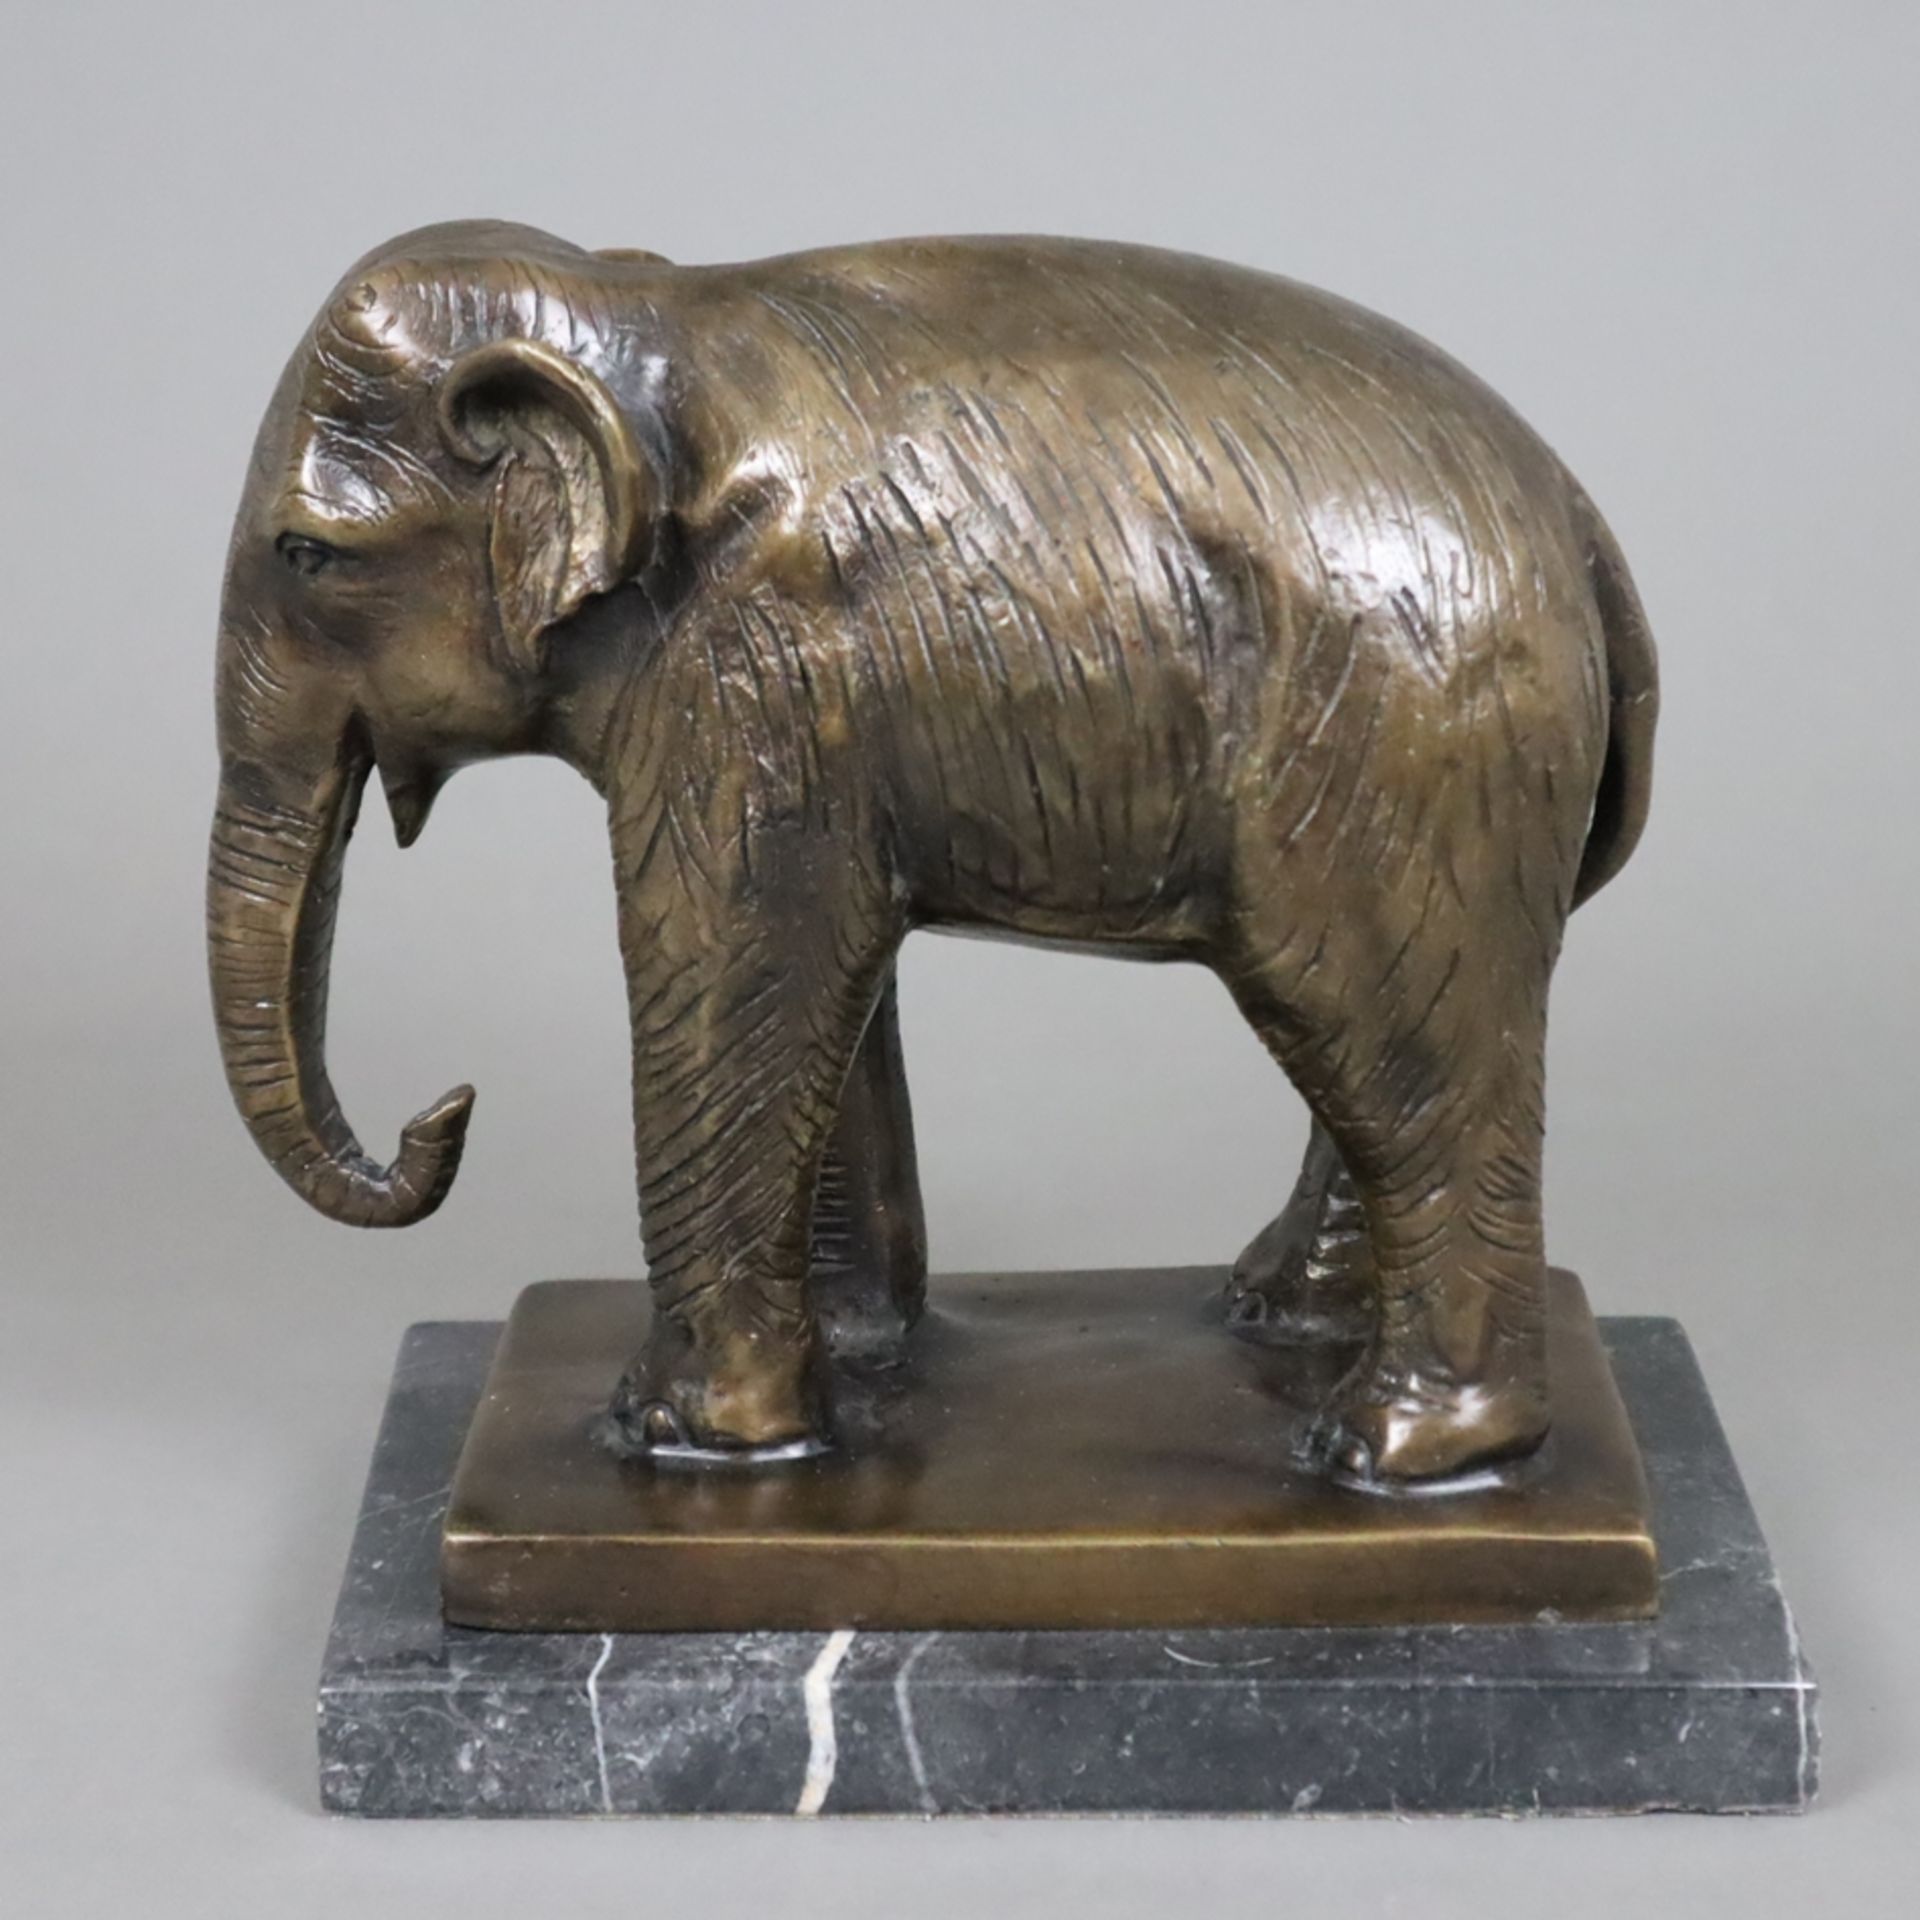 Tierfigur "Stehender Elefant" - Bronze, braun patiniert, naturalistische Darstellung auf rechteckig - Image 3 of 6